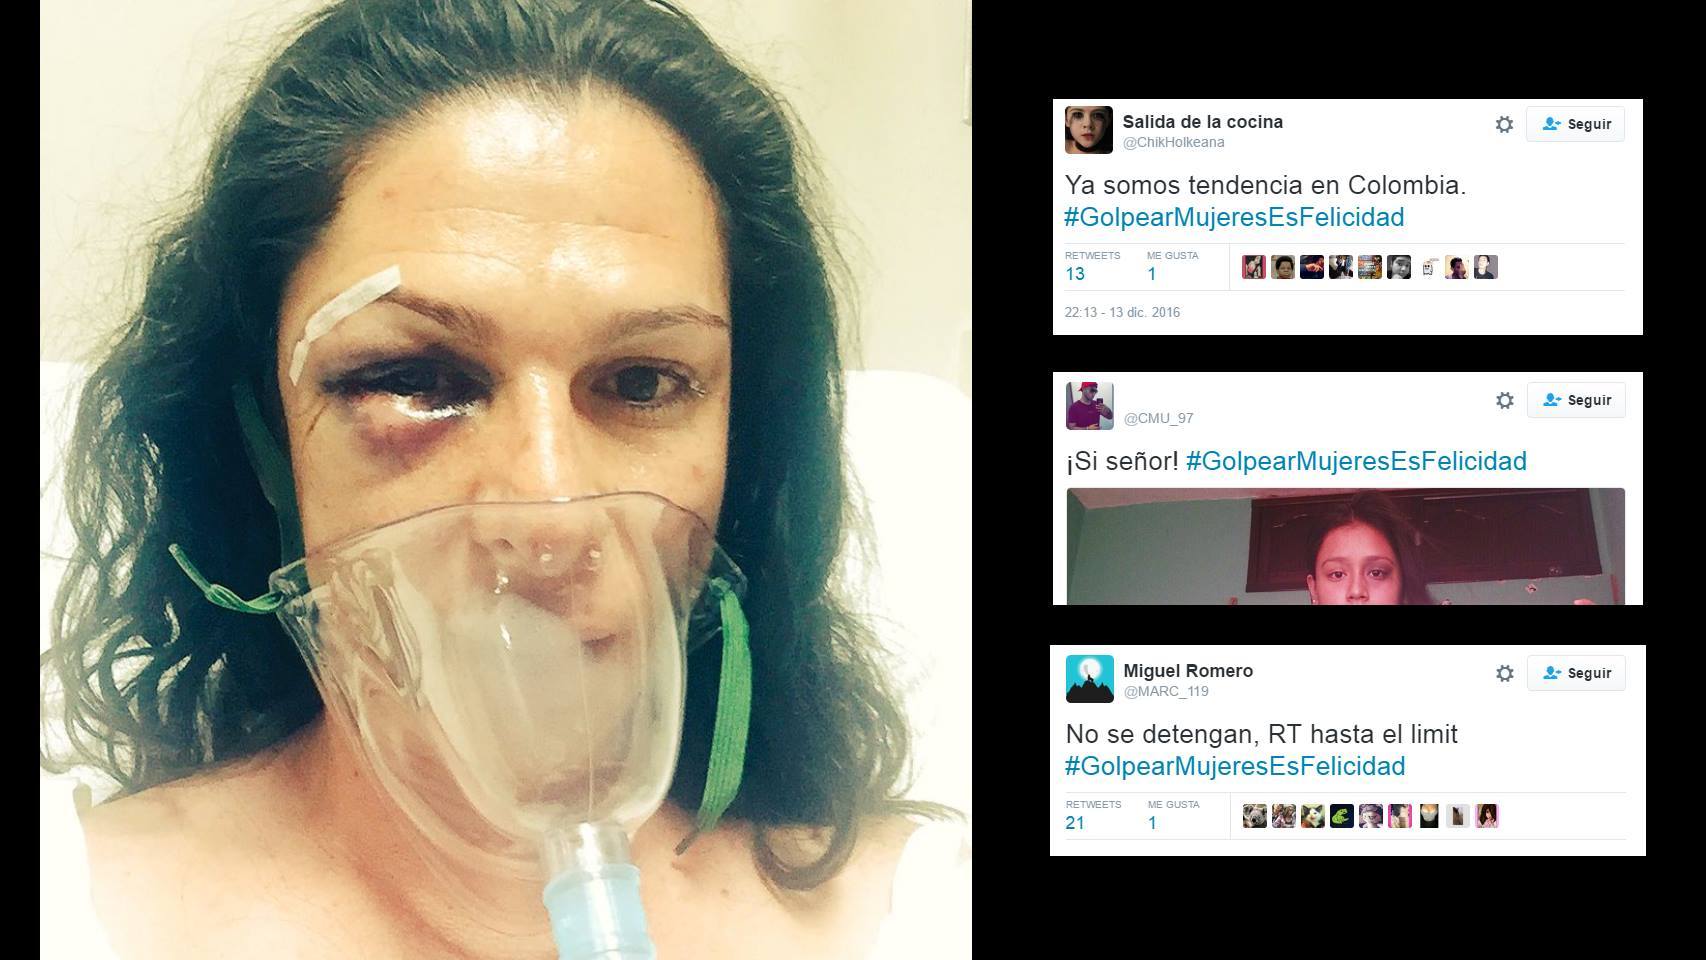 La imagen tras la agresión que subió Ana Guevara; a la derecha, los tuits que la ridiculizan.